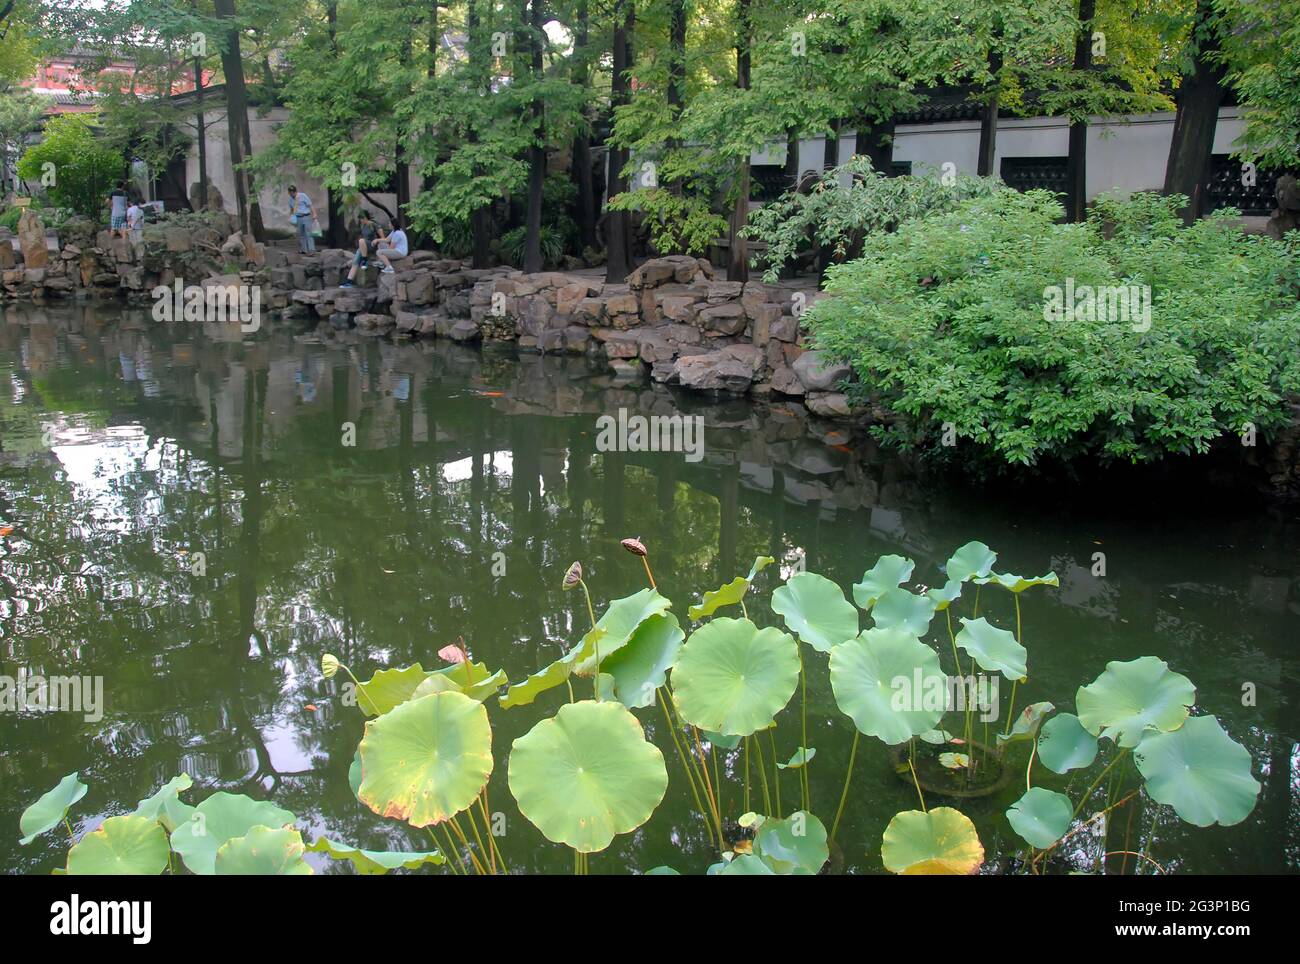 Yu Yuan Garten in der Altstadt von Shanghai, China. Ein traditioneller chinesischer Garten mit Bäumen, Felsen und Wasser. Blick auf den See mit unkenntlichen Menschen. Stockfoto